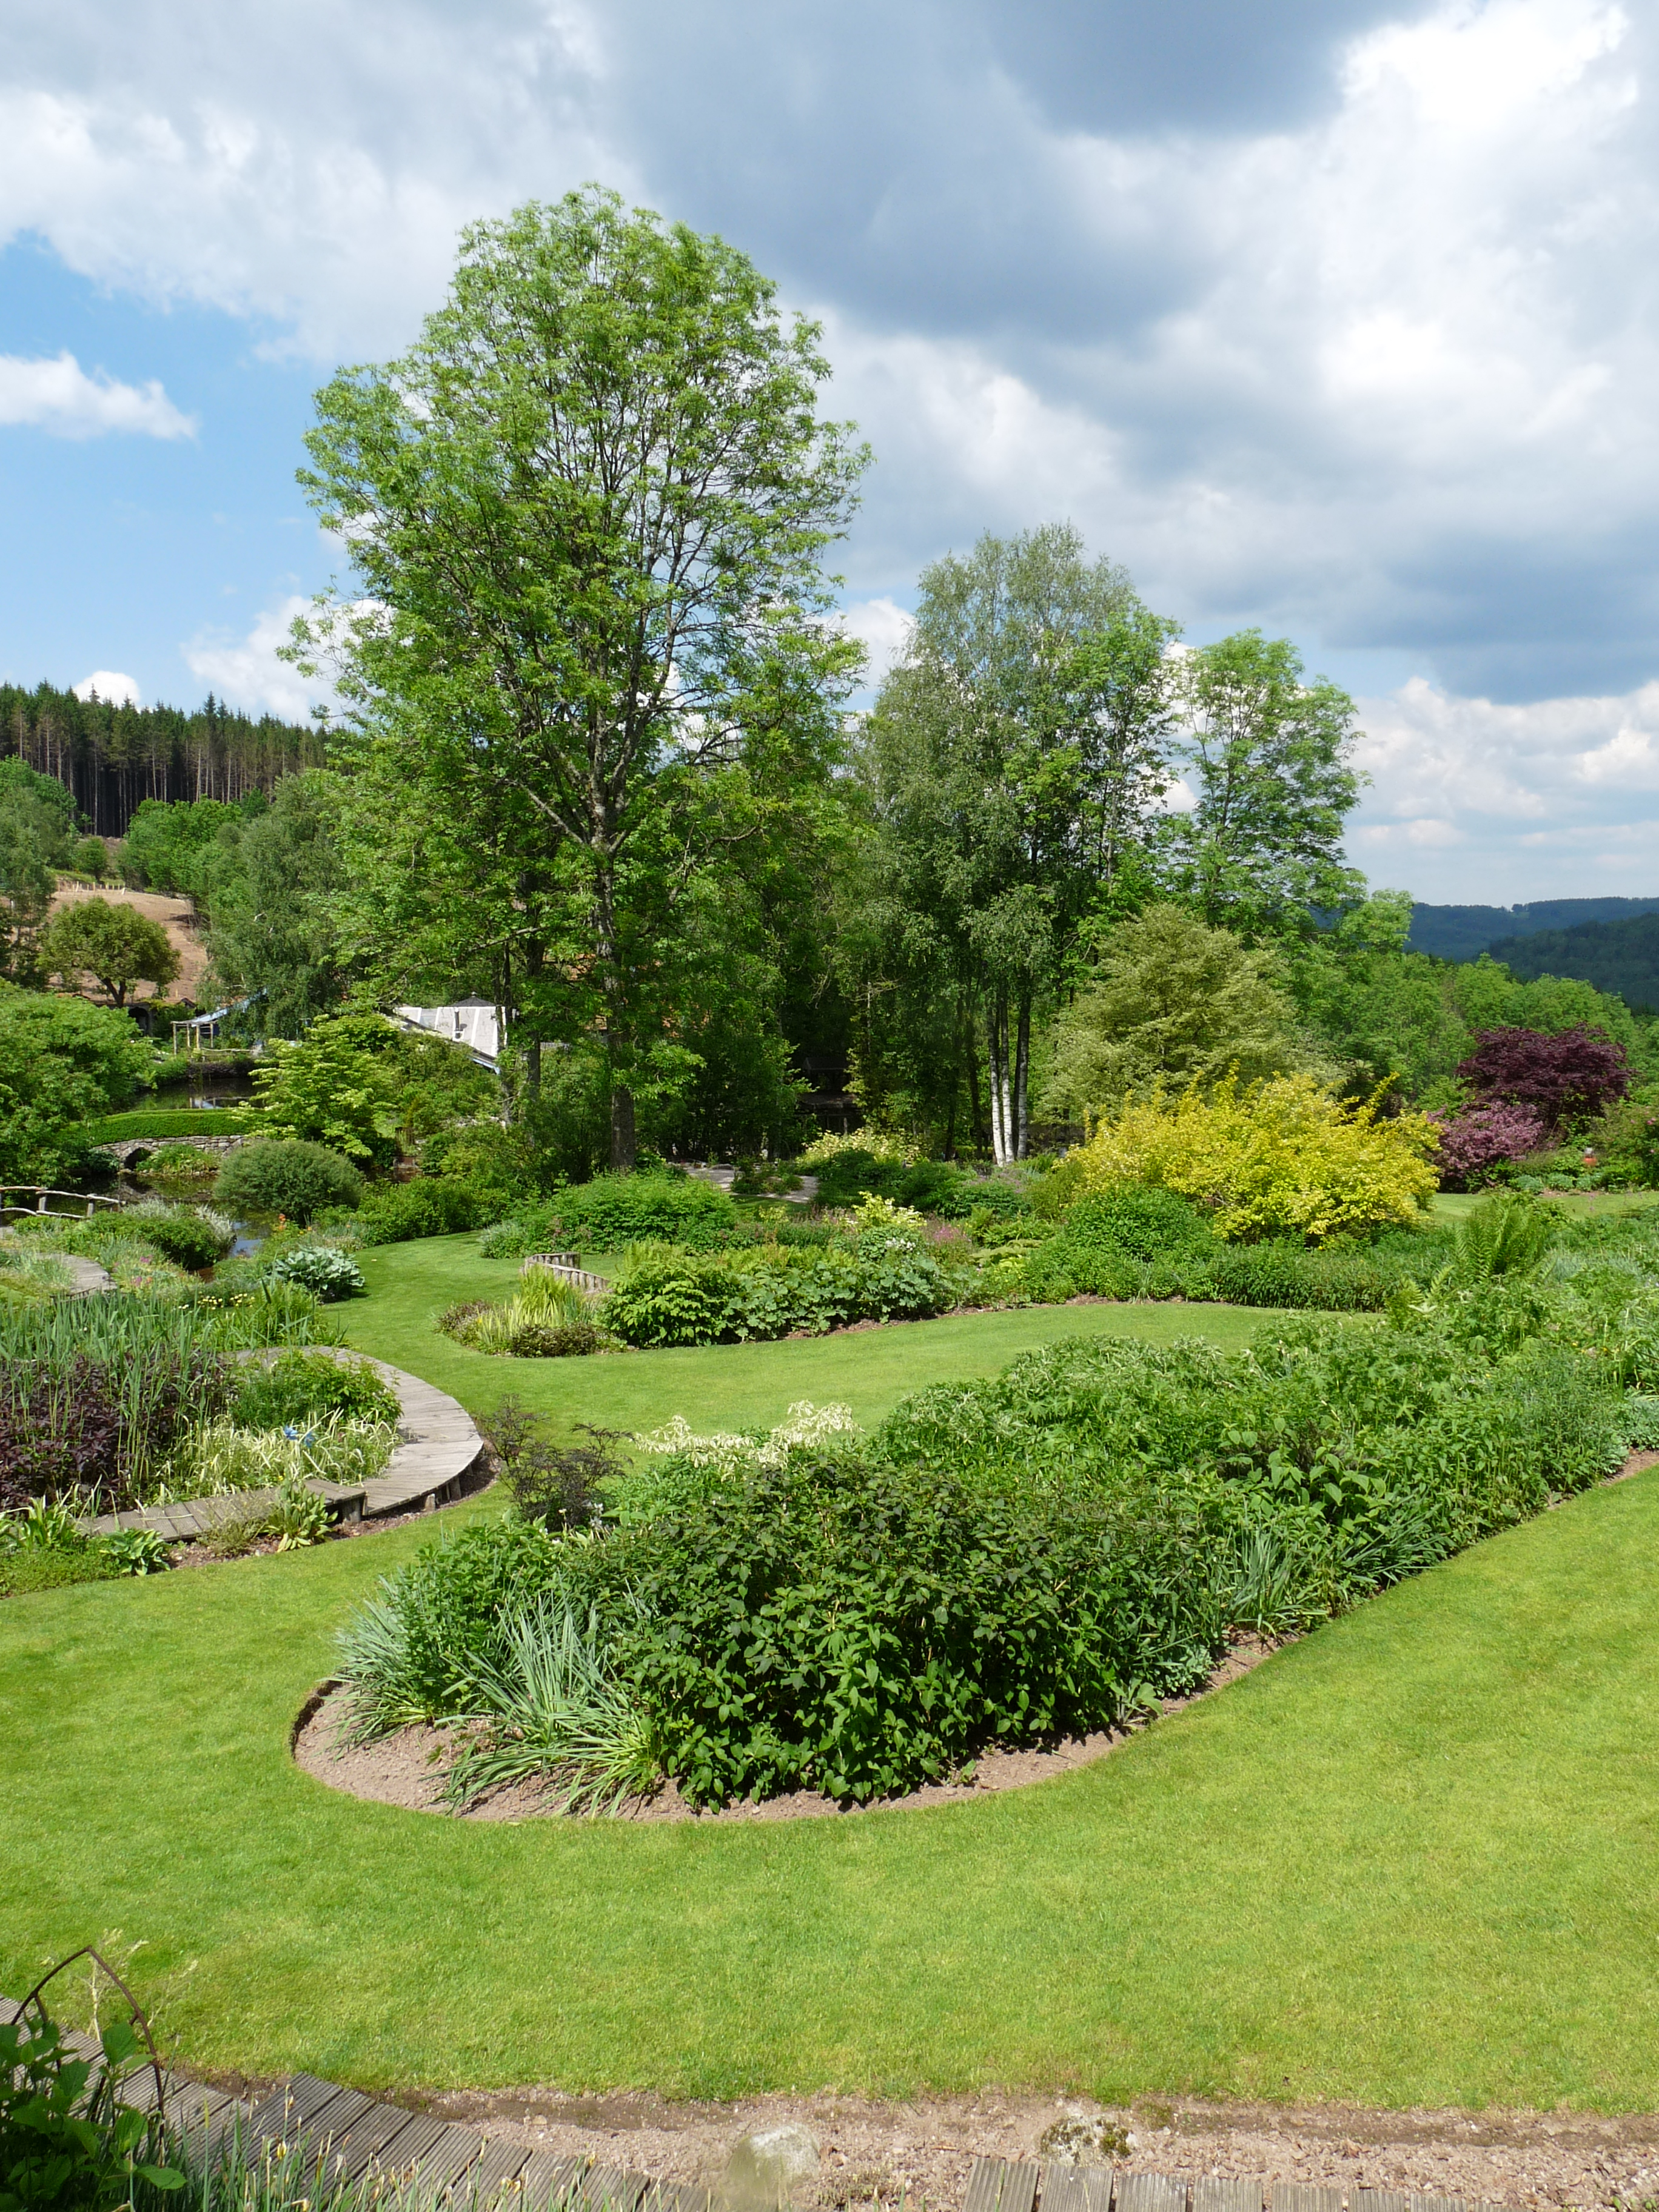 File:Jardin de Berchigranges (8).JPG - Wikimedia Commons